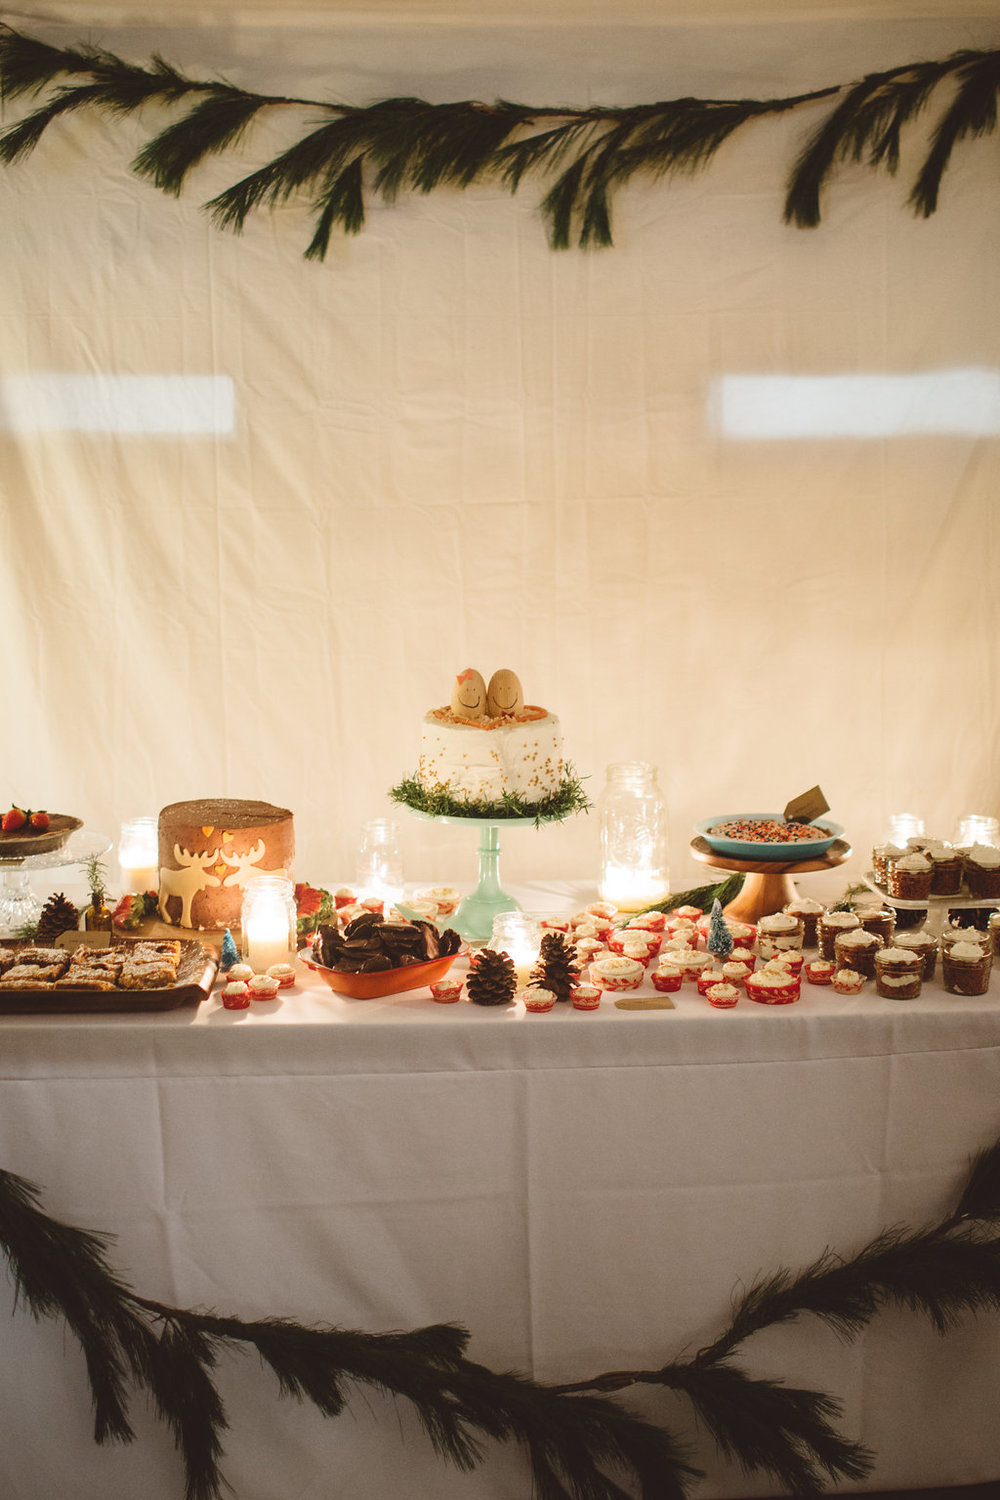 Ð ÐµÐ·ÑÂƒÐ»ÑÂ‚Ð°ÑÂ‚ ÑÂÐ»Ð¸ÐºÐ° Ð·Ð° The desserts Homemade wedding